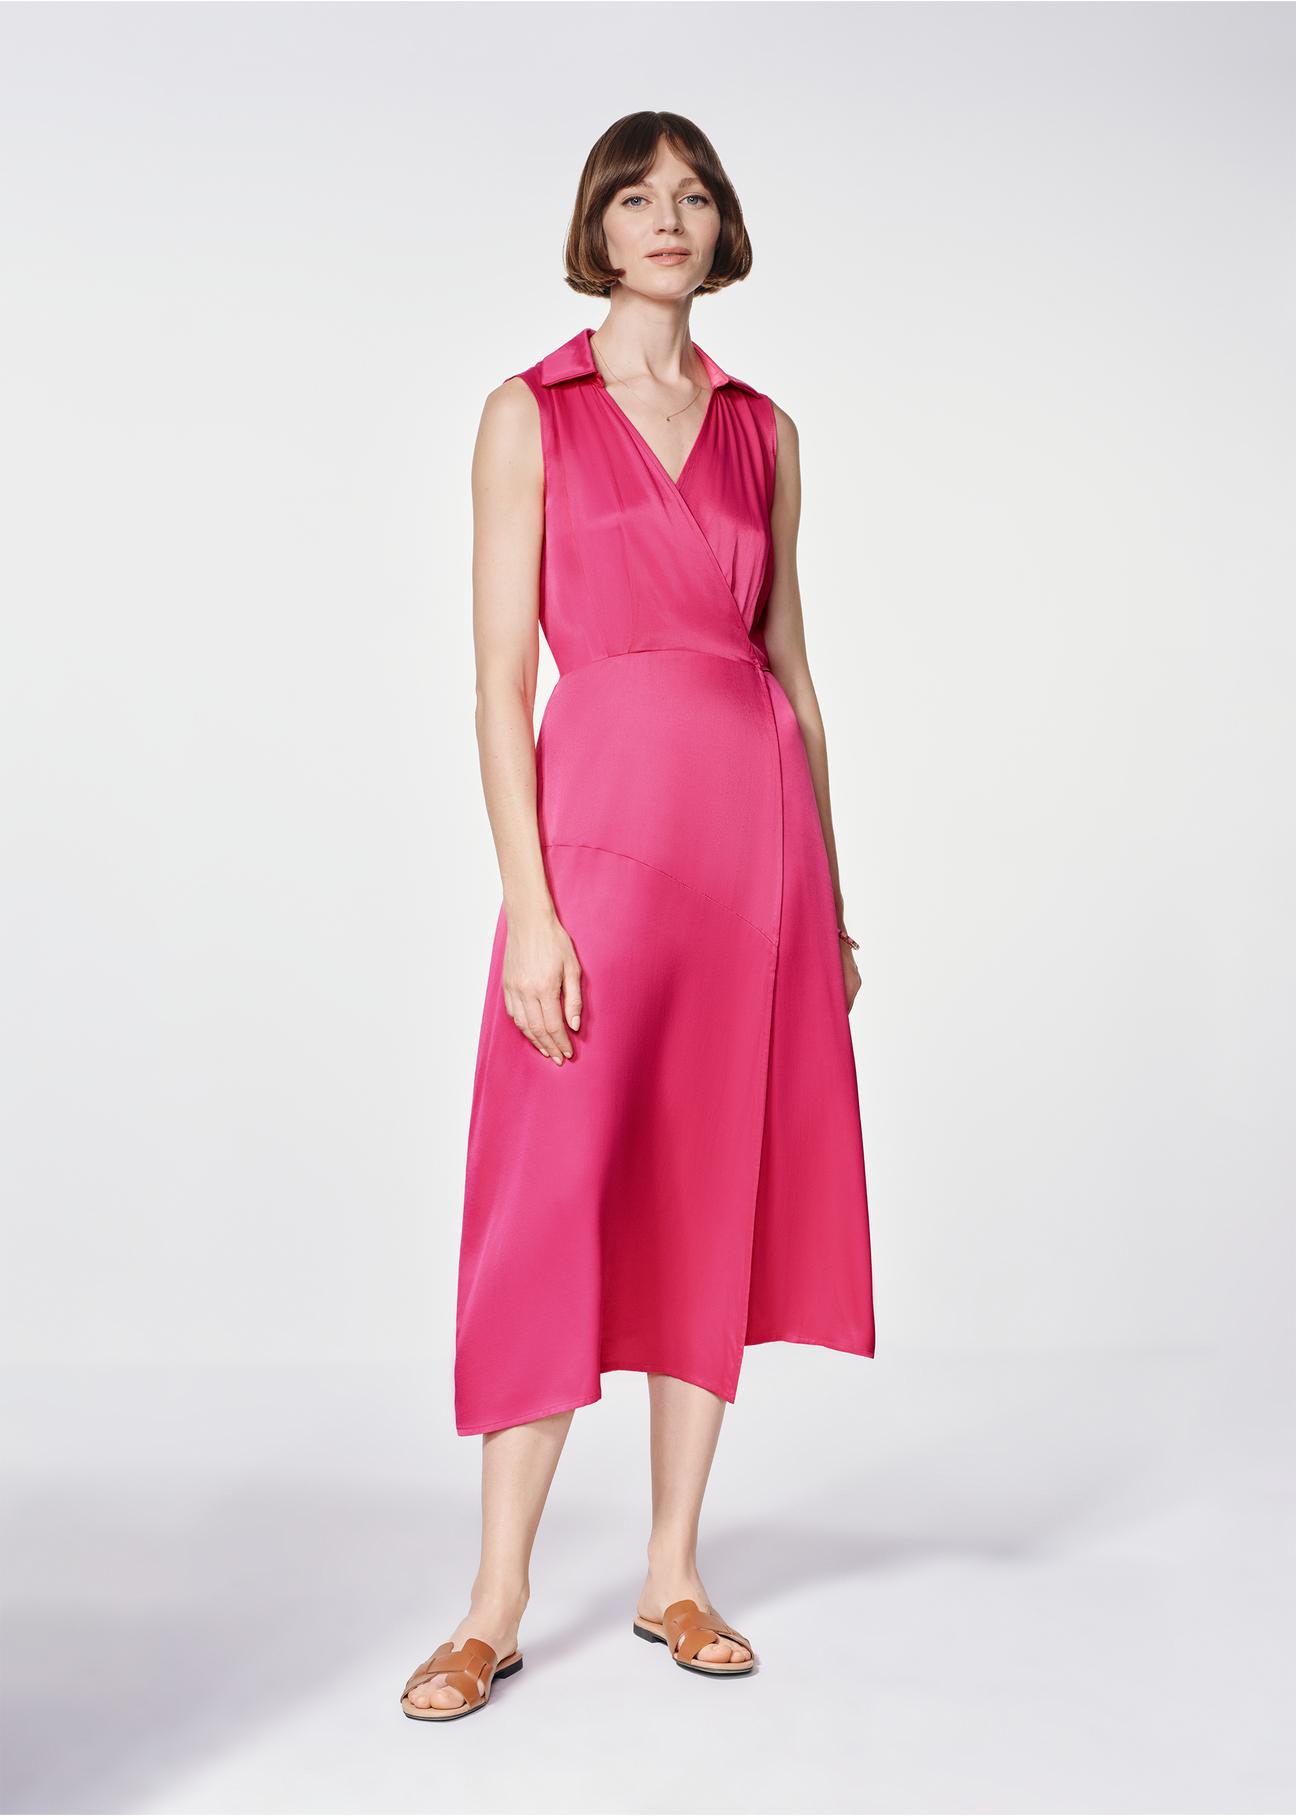 Różowa długa sukienka wiązana w pasie SUKDT-0188-31(W24)-02